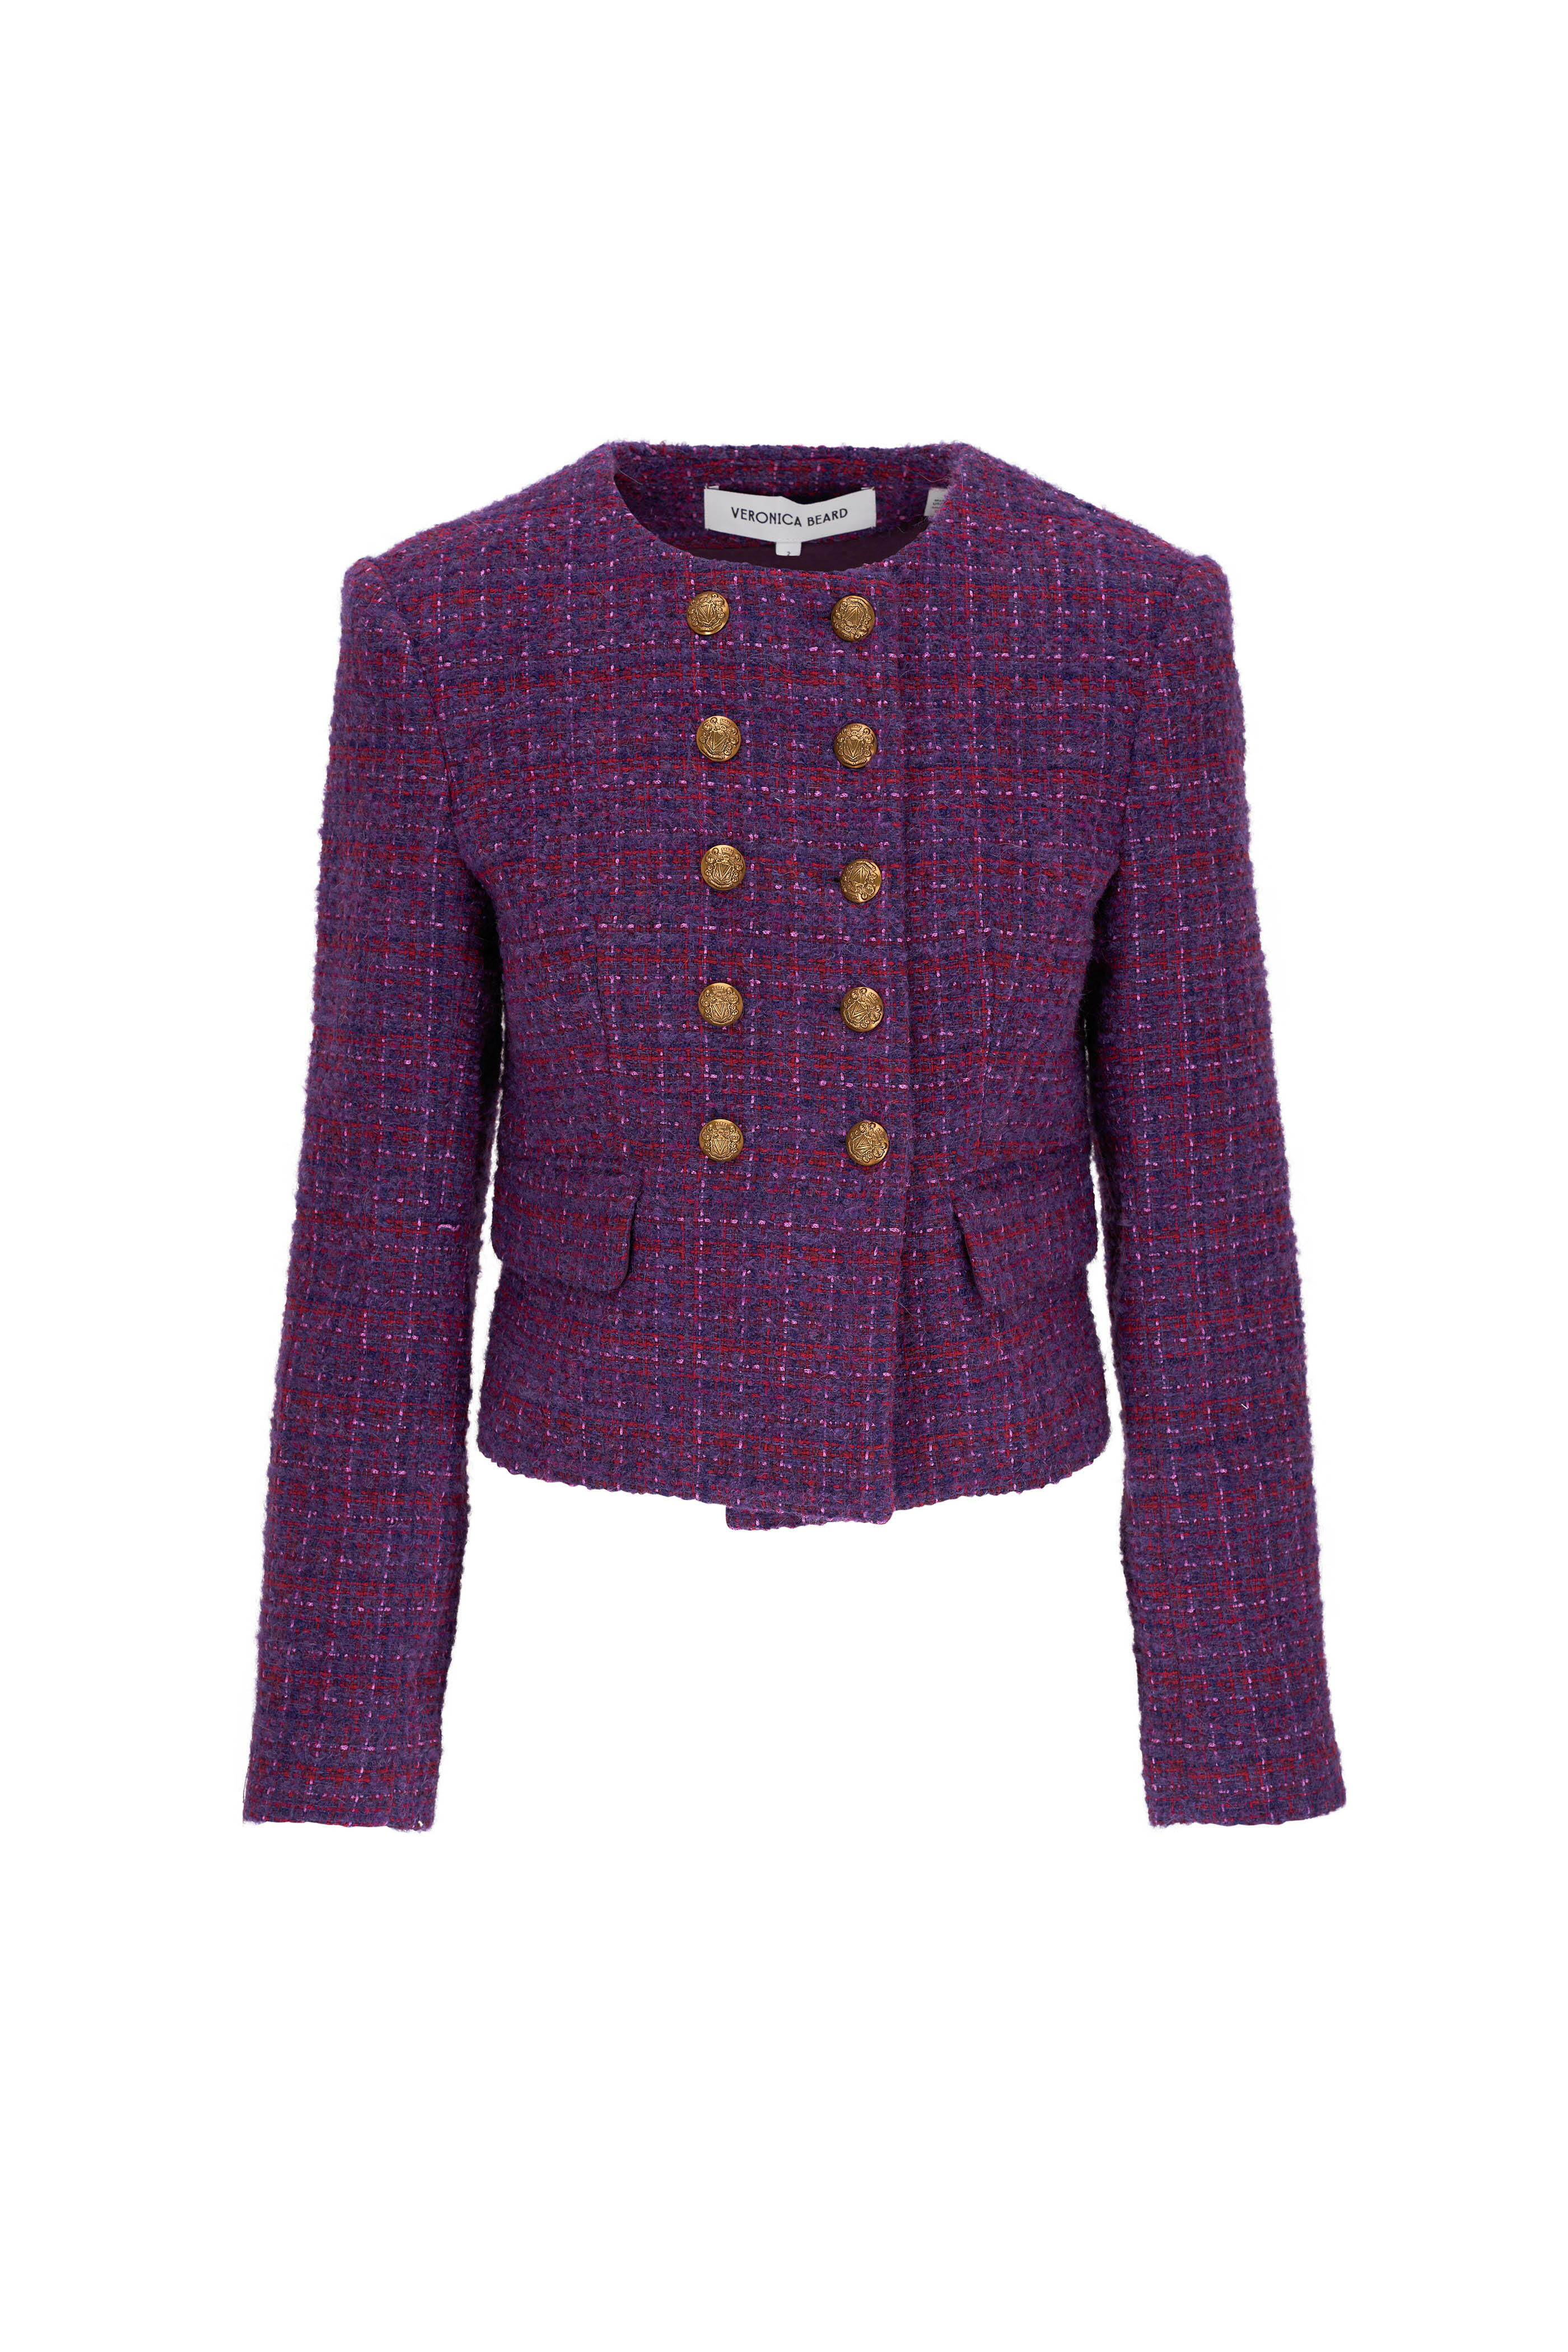 Veronica Beard - Bentley Aubergine Multi Tweed Jacket